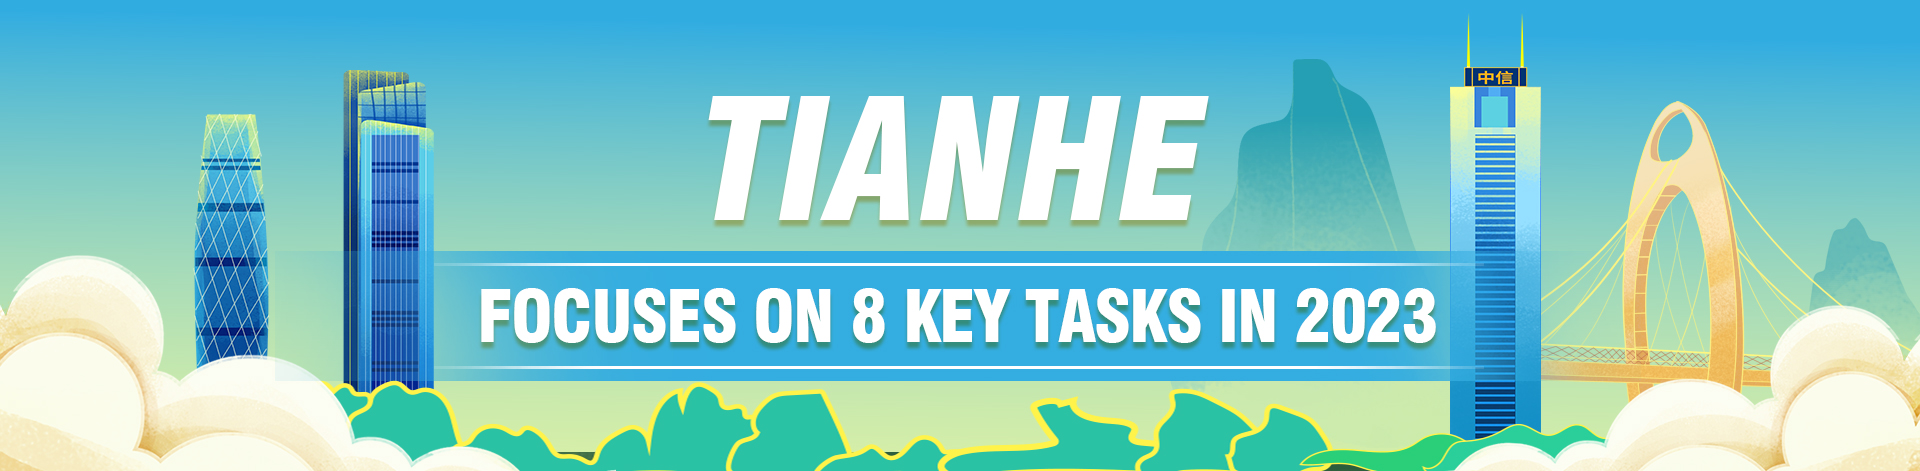 Tianhe focuses on 8 key tasks in 2023